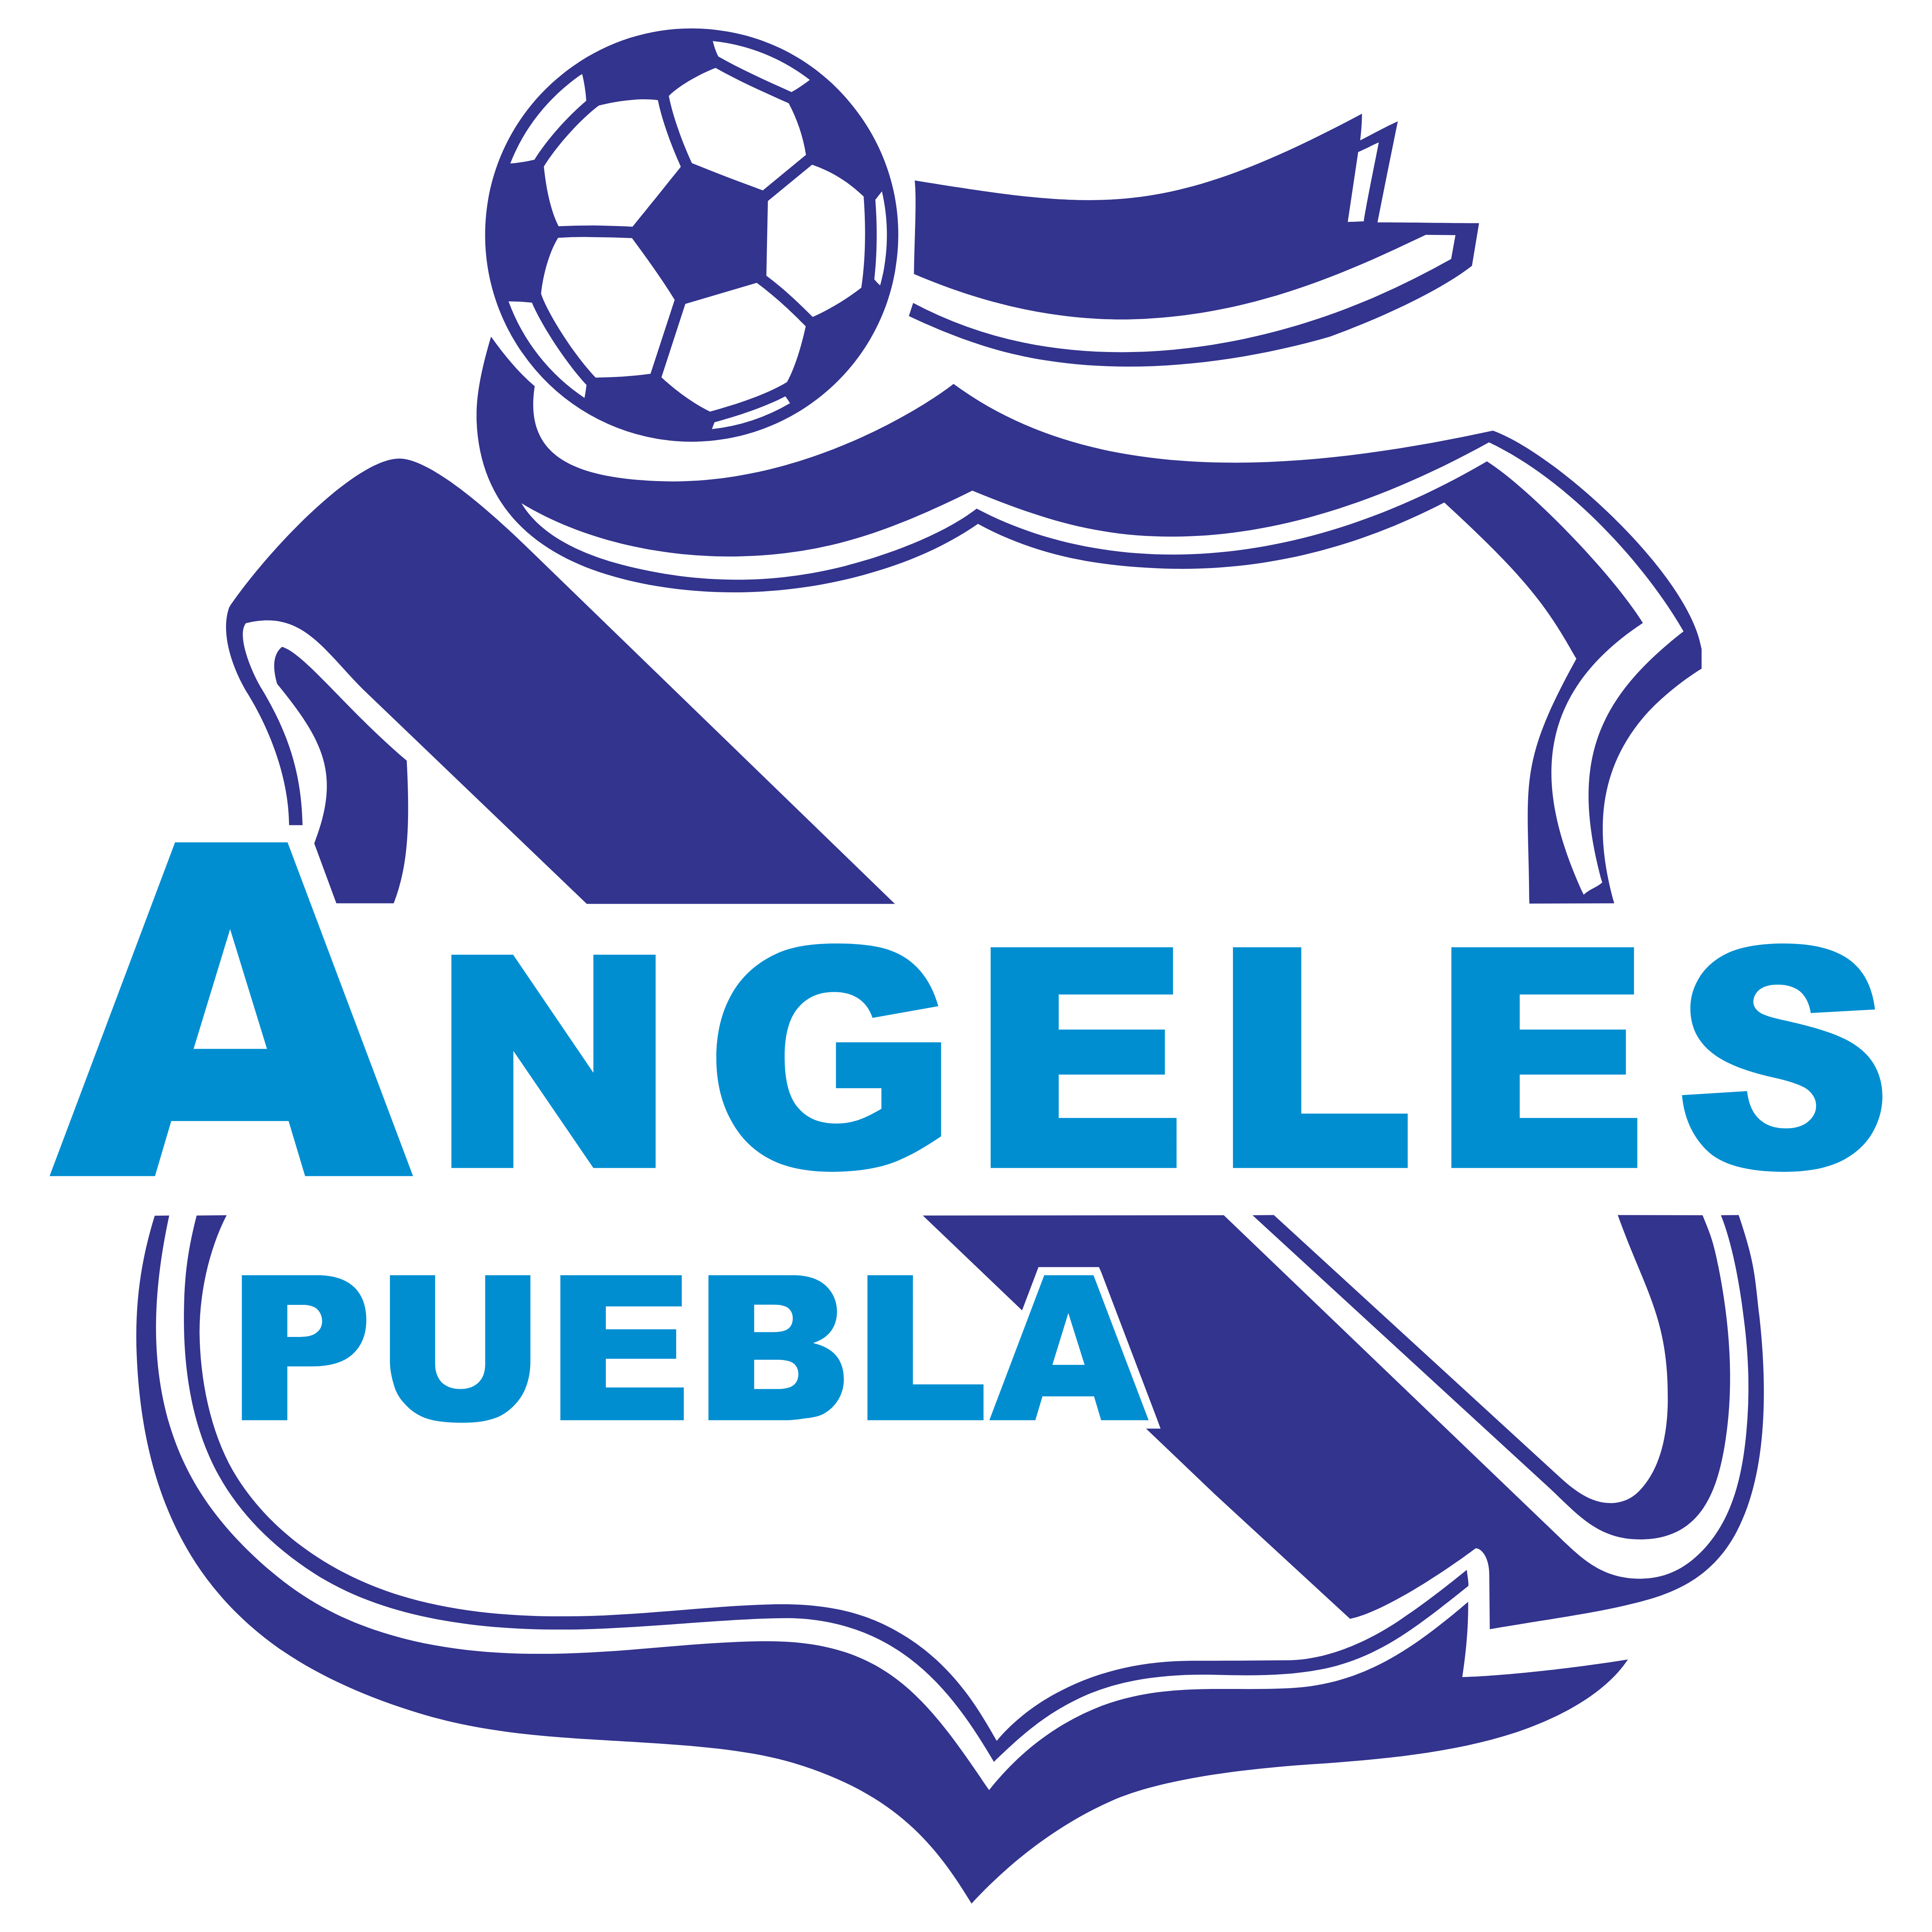 Puebla Logo - Angeles Puebla – Logos Download